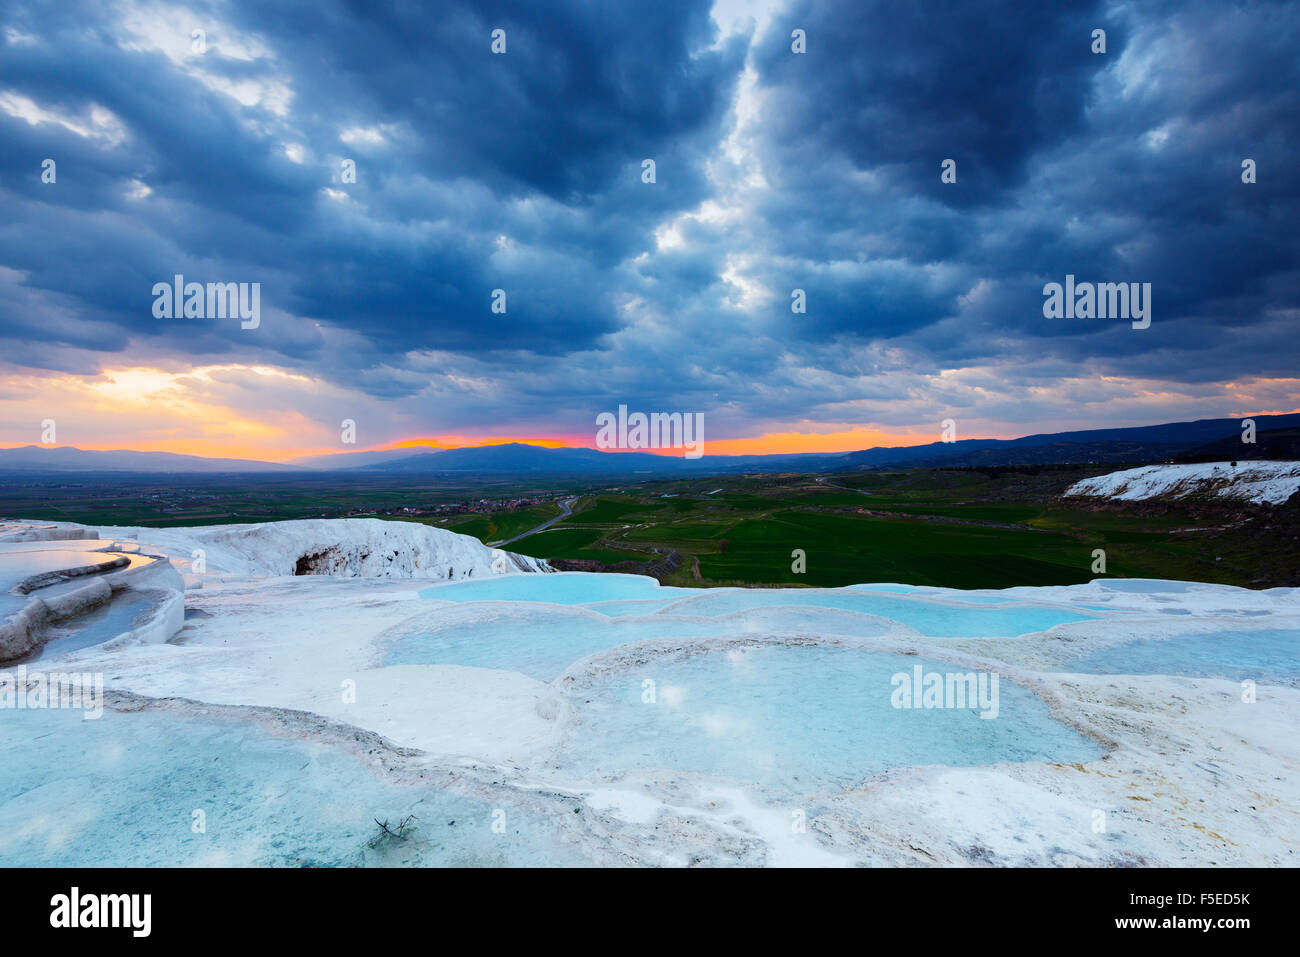 Les bassins de travertin blanc au coucher du soleil, Pamukkale, Site du patrimoine mondial de l'UNESCO, l'ouest de l'Anatolie, Turquie, Asie mineure, l'Eurasie Banque D'Images